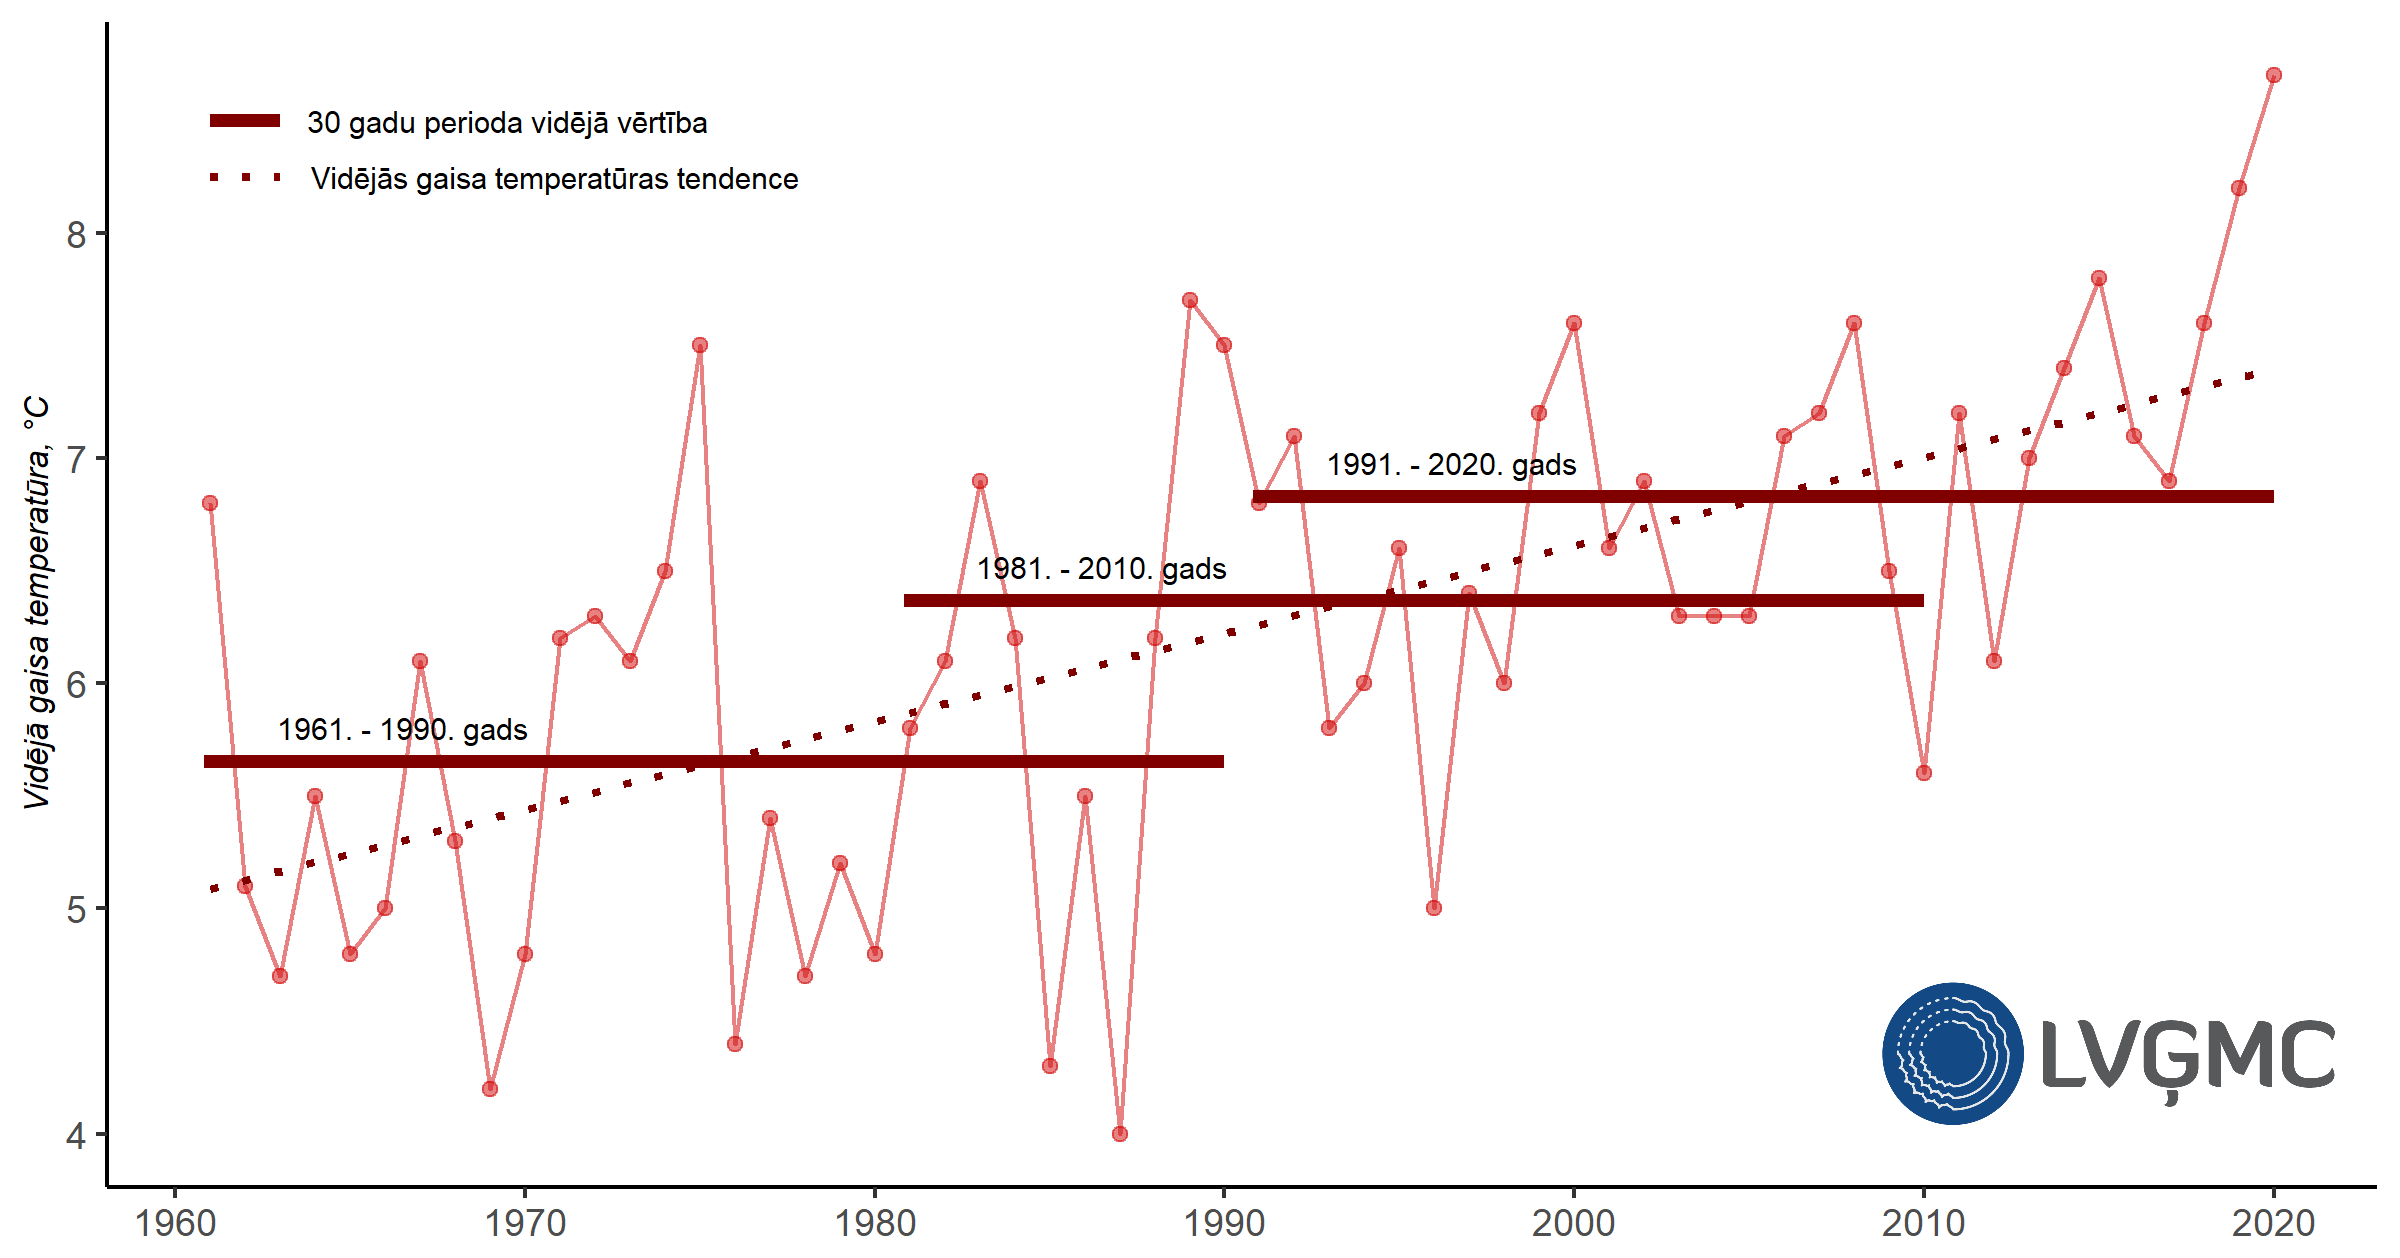 Gada vidējā gaisa temperatūra Latvijā laika periodā no 1961. līdz 2020. gadam